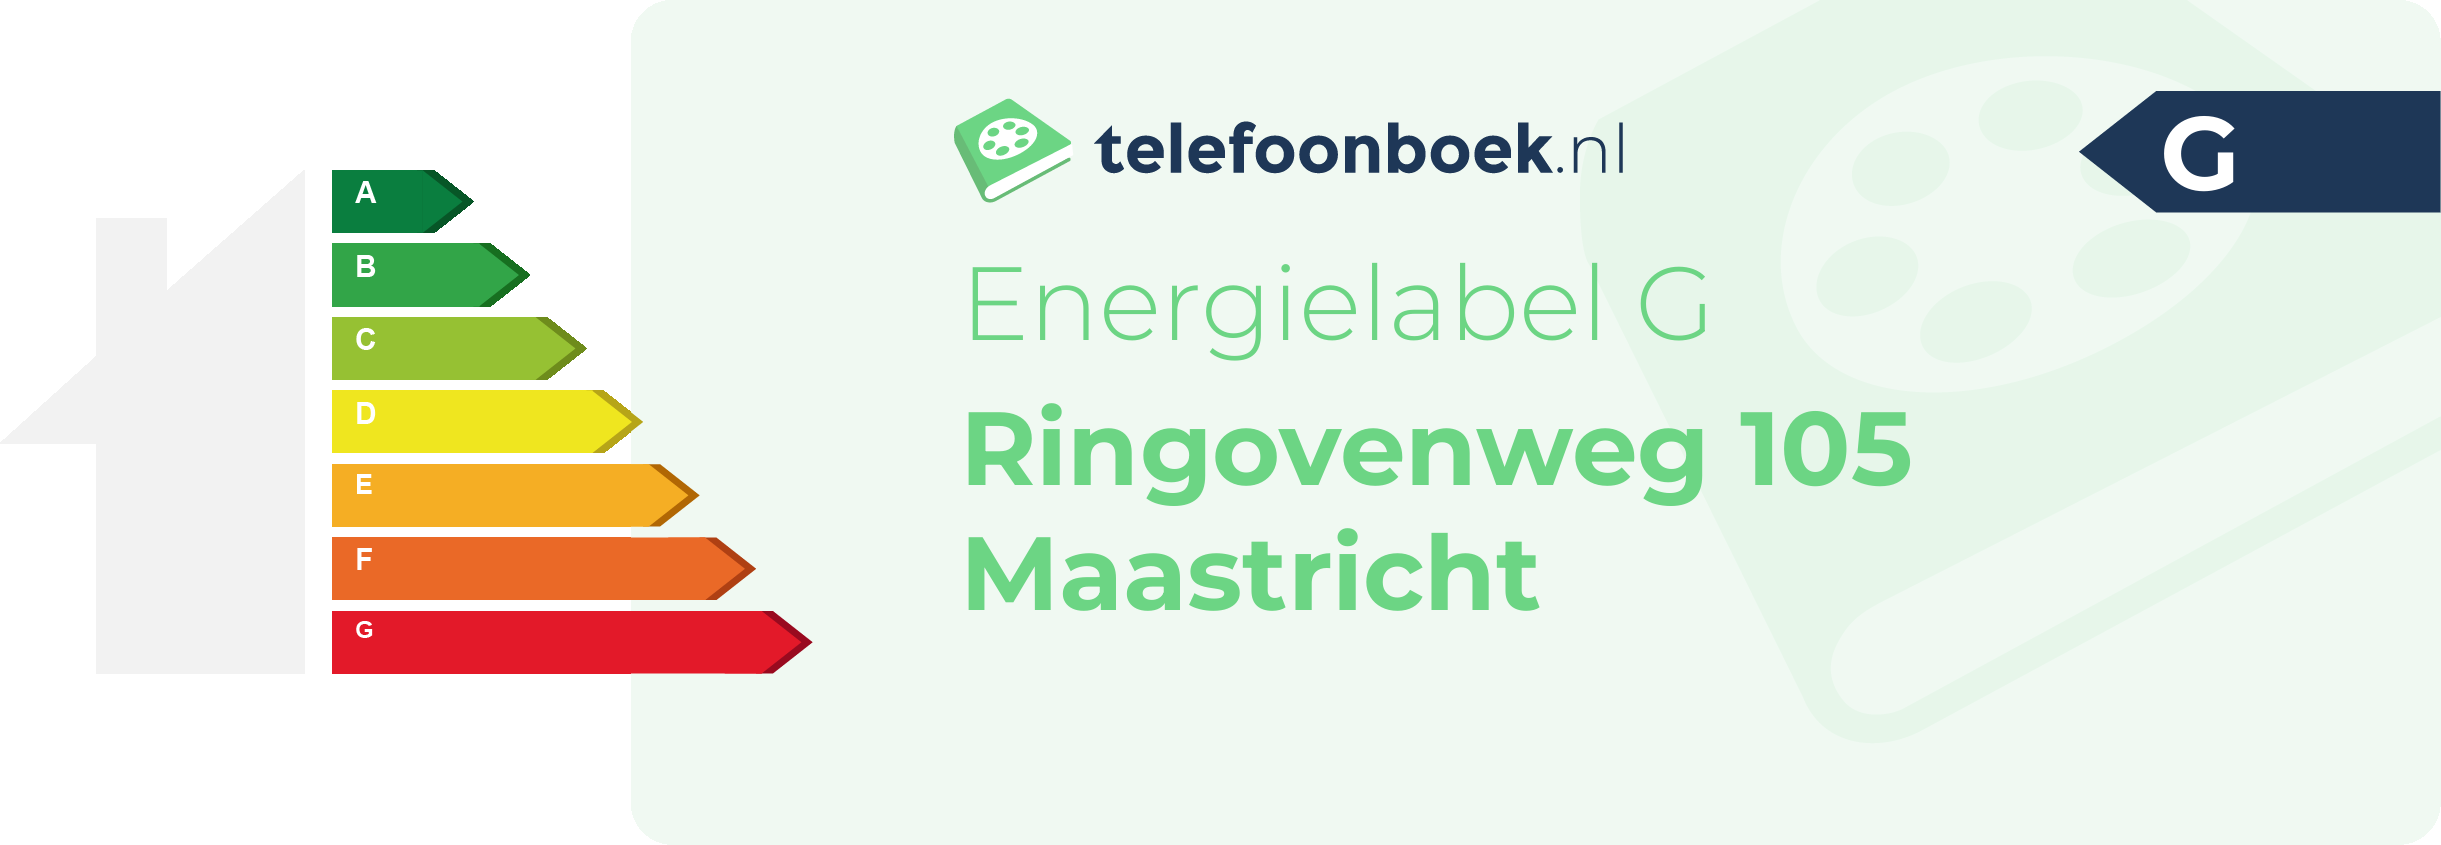 Energielabel Ringovenweg 105 Maastricht